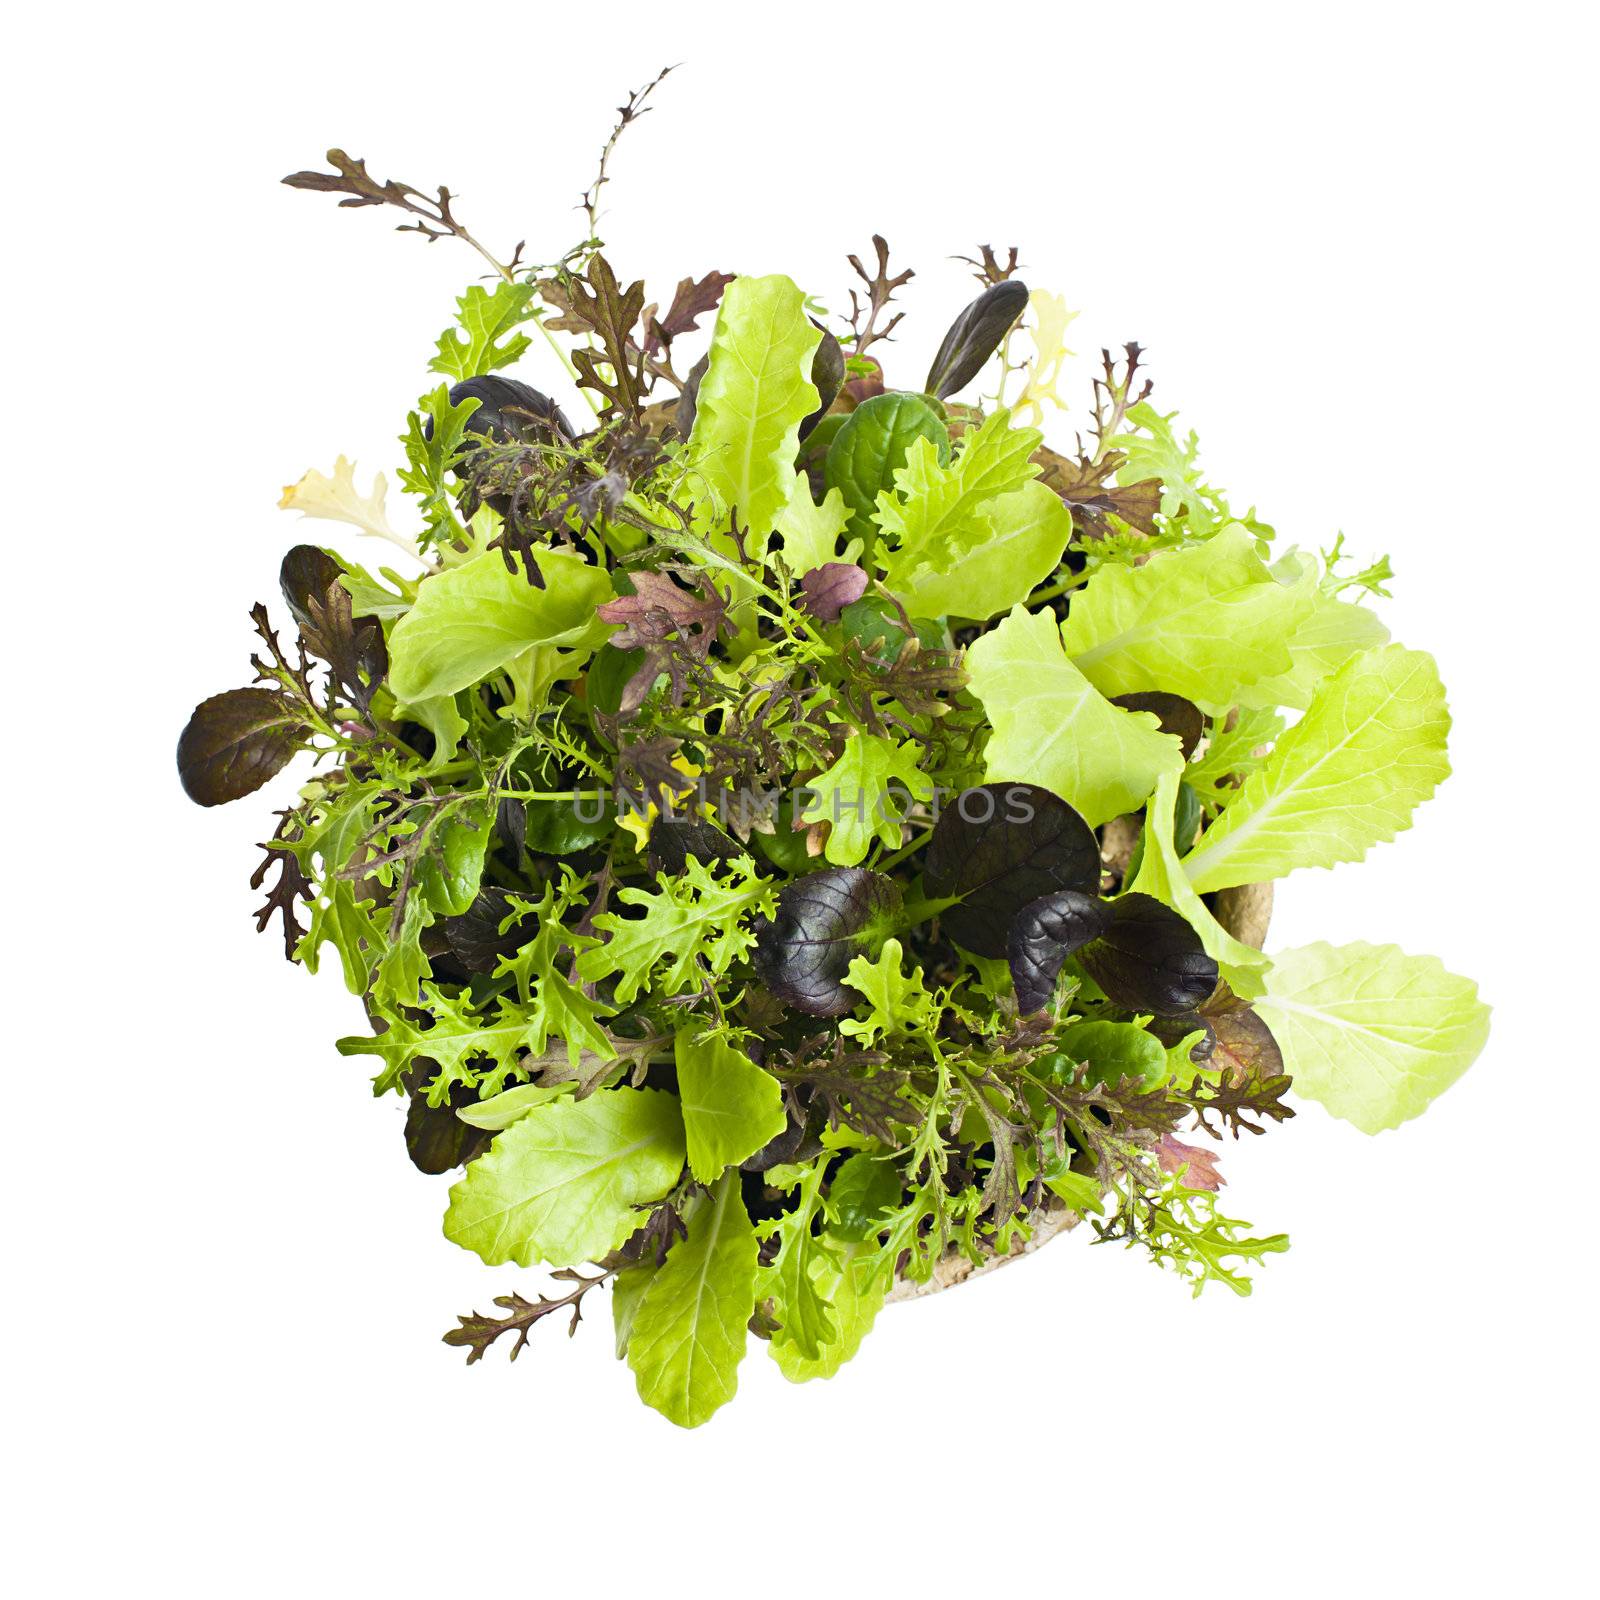 Lettuce seedlings by elenathewise